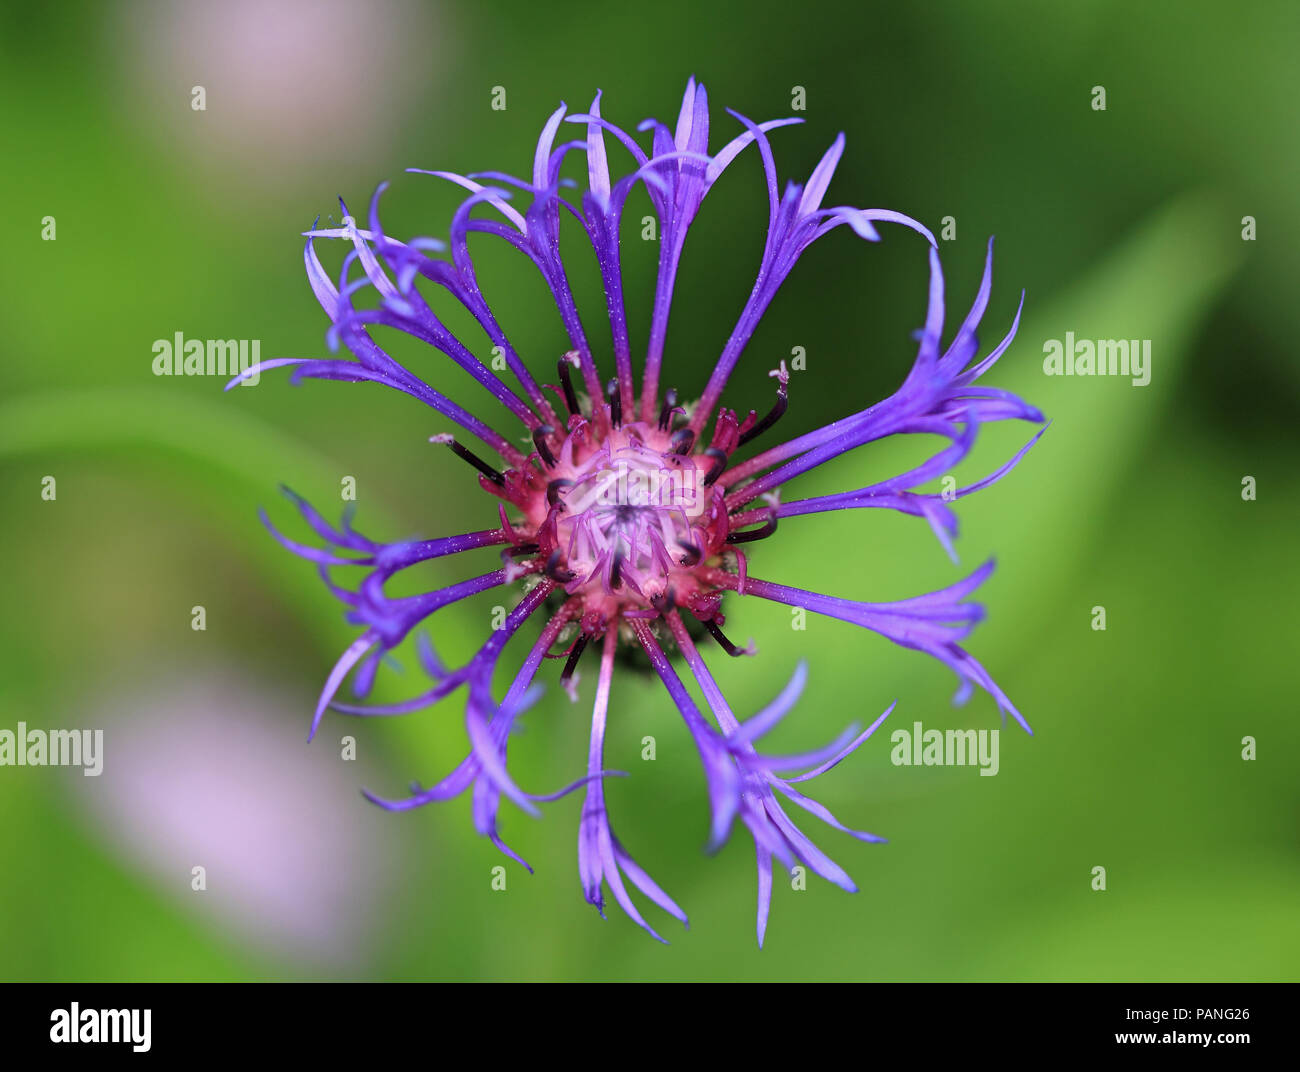 Cornflower, close-up, macro Stock Photo